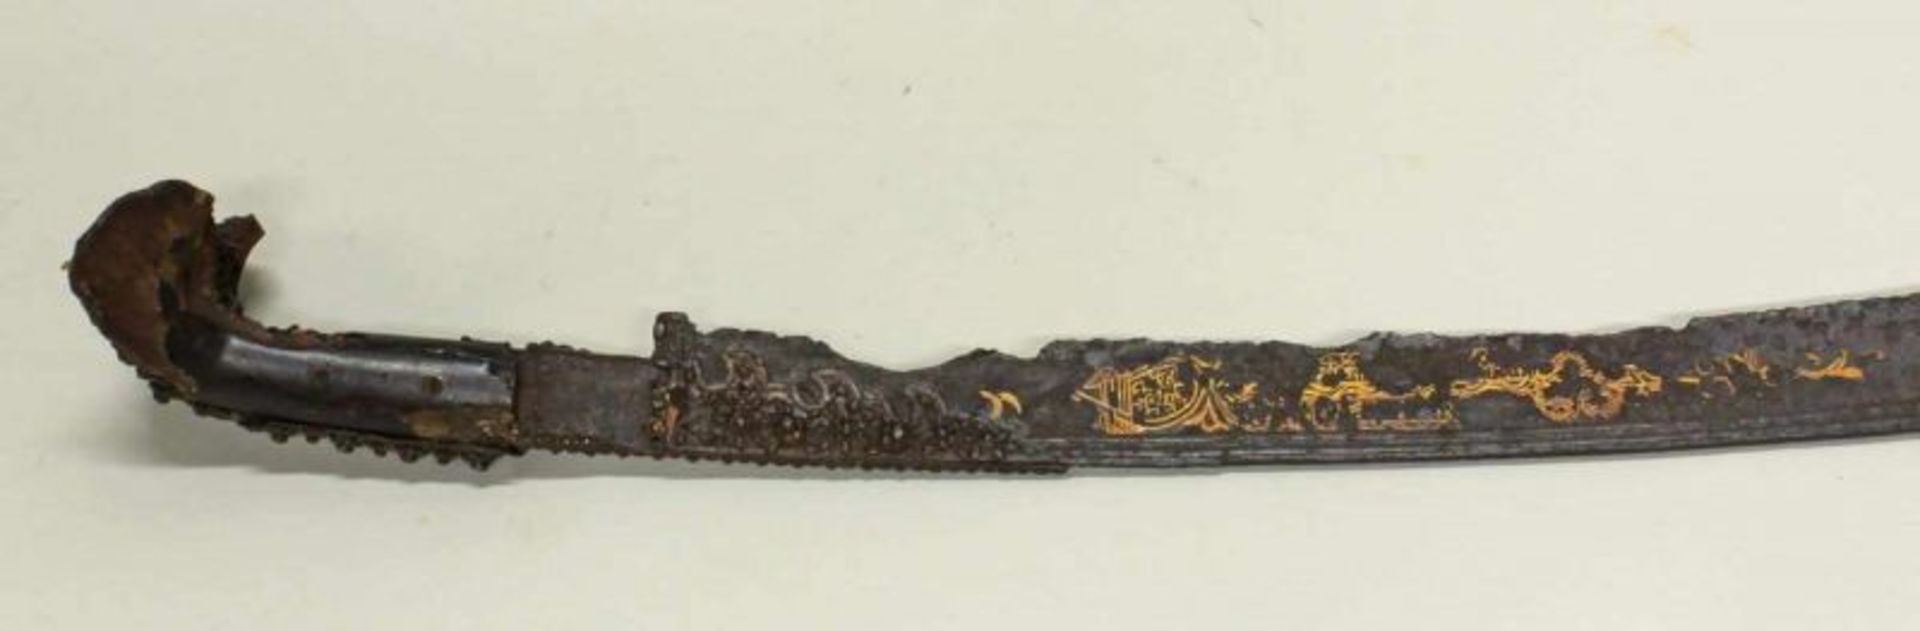 Yatagan, osmanisch, wohl 18./19. Jh., Klinge mit Resten von Goldtauschierung (Schriftzeichen), - Bild 2 aus 2